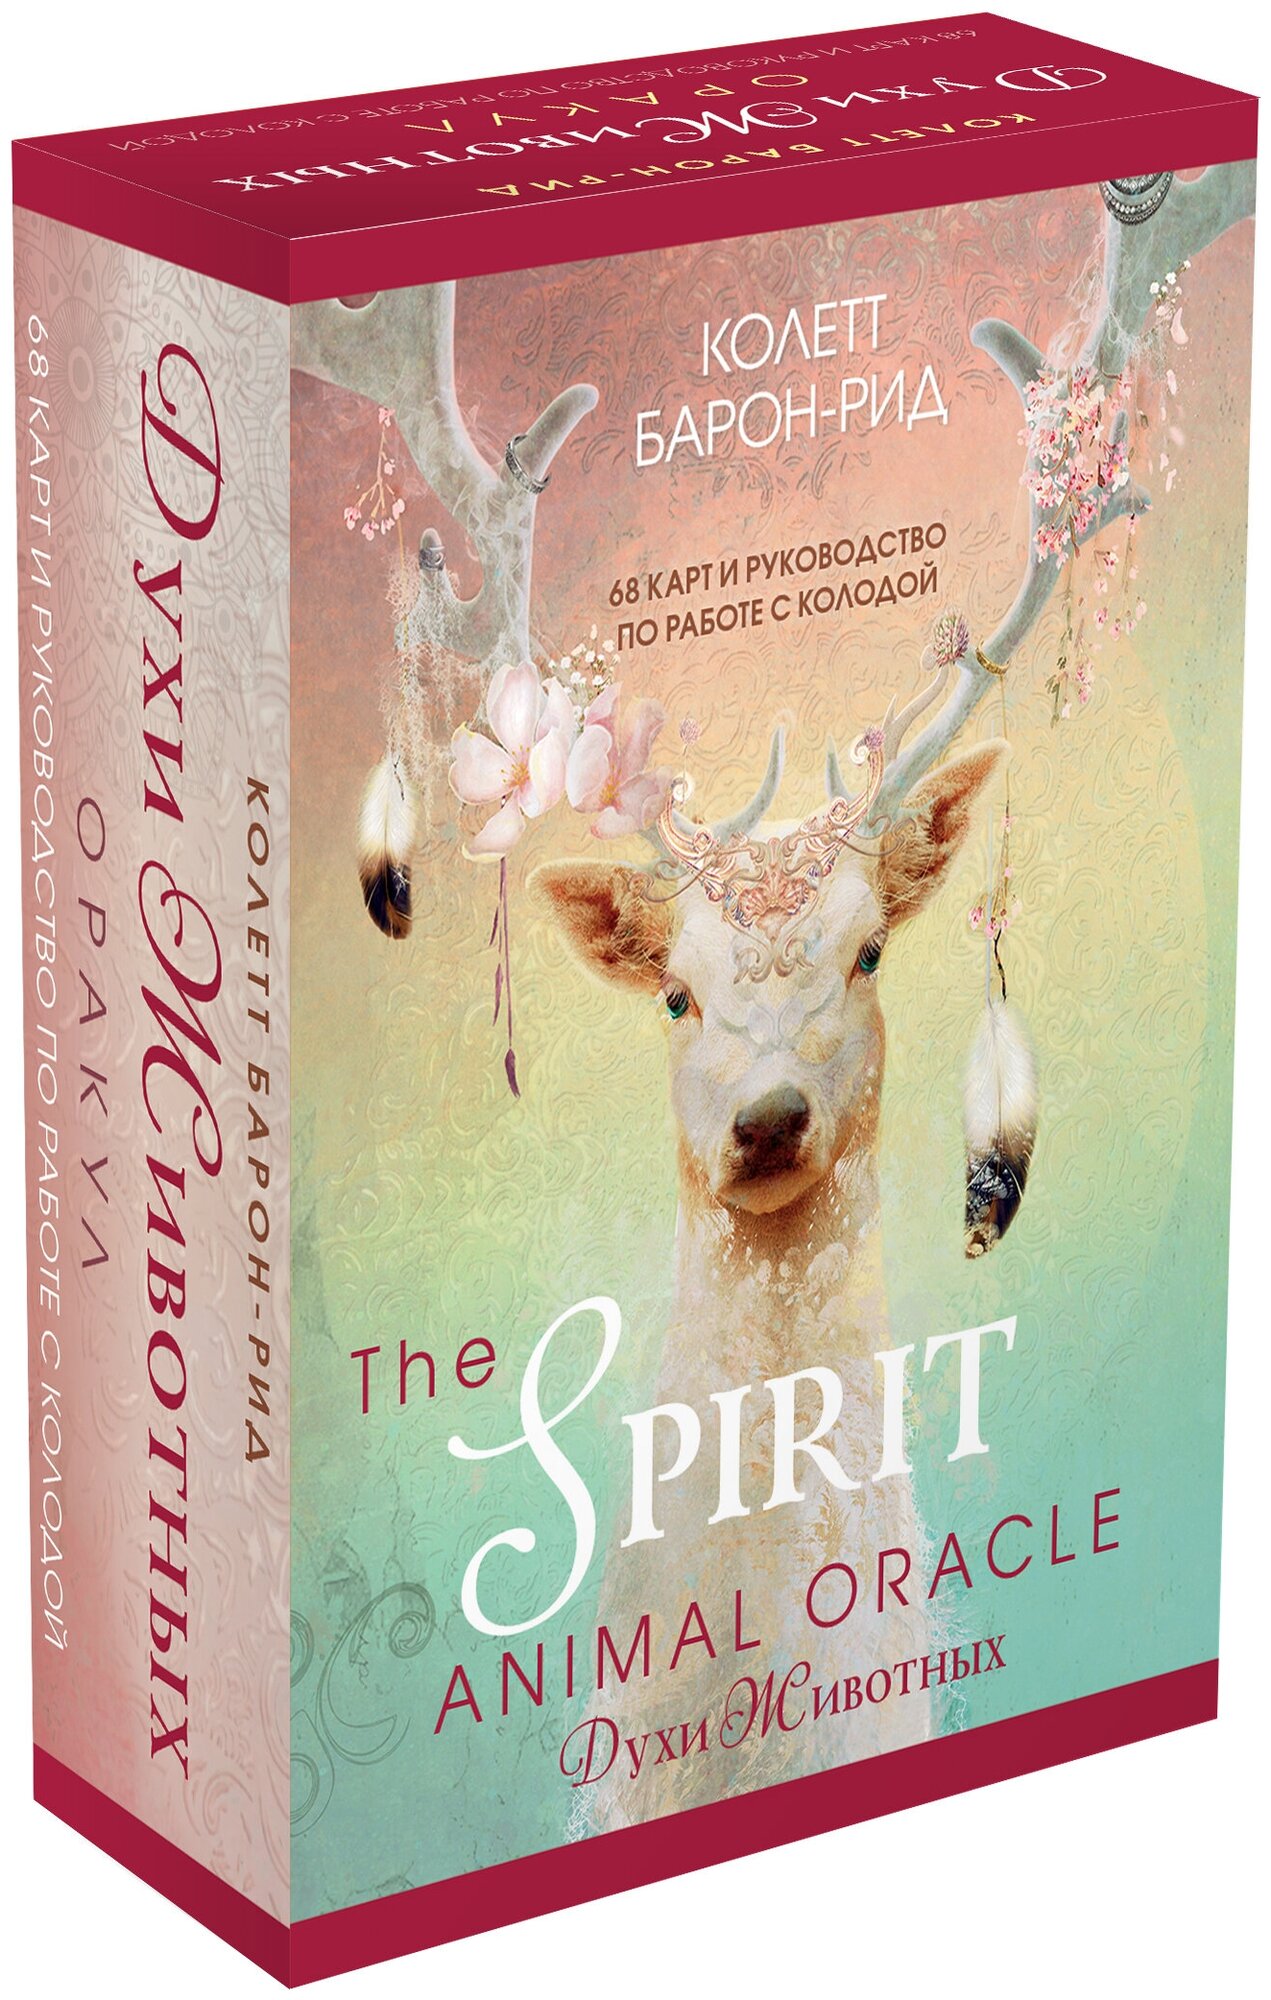 The Spirit Animal Oracle. Духи животных. Оракул (68 карт и руководство в подарочном оформлении) - фото №4